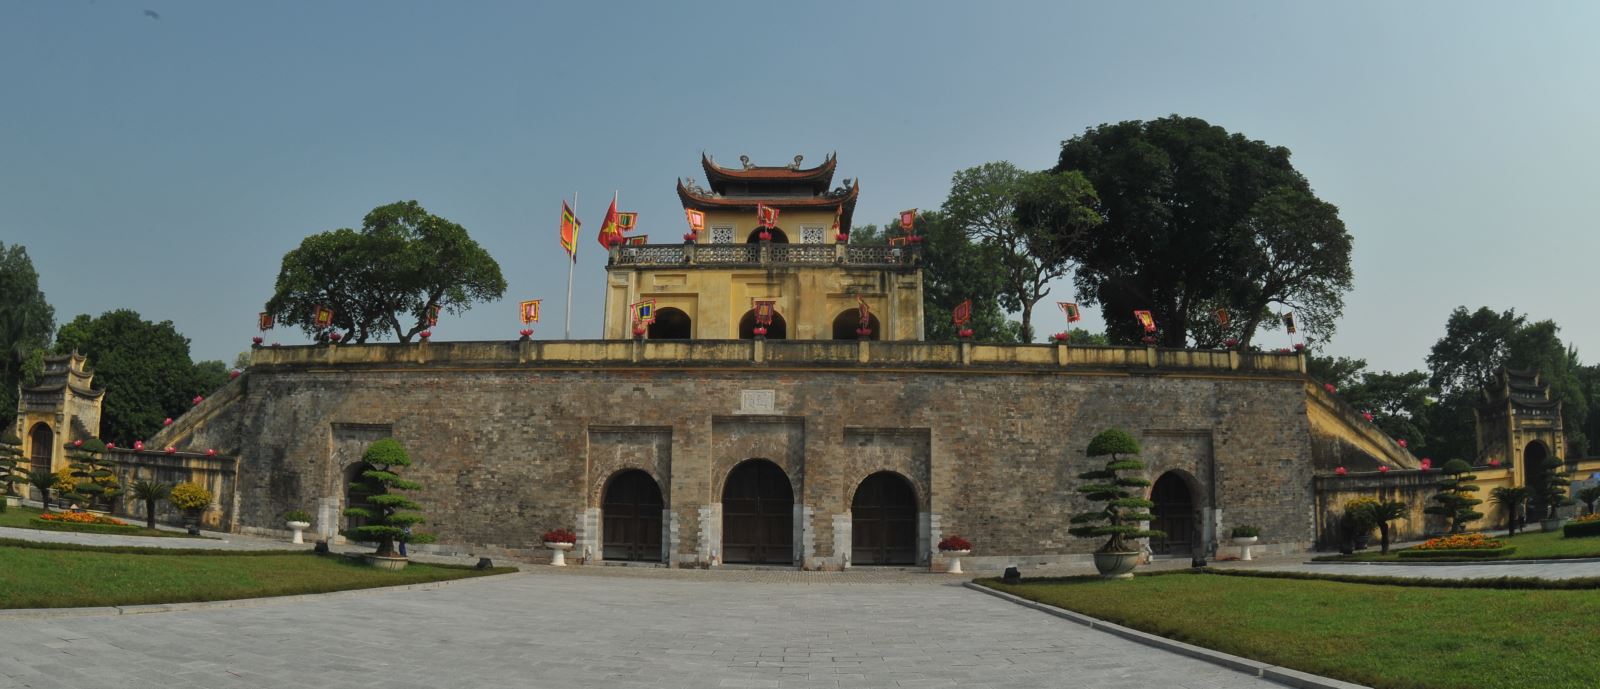 Góc nhìn mới về giá trị khu di tích Trung tâm Hoàng thành Thăng Long - Hà Nội